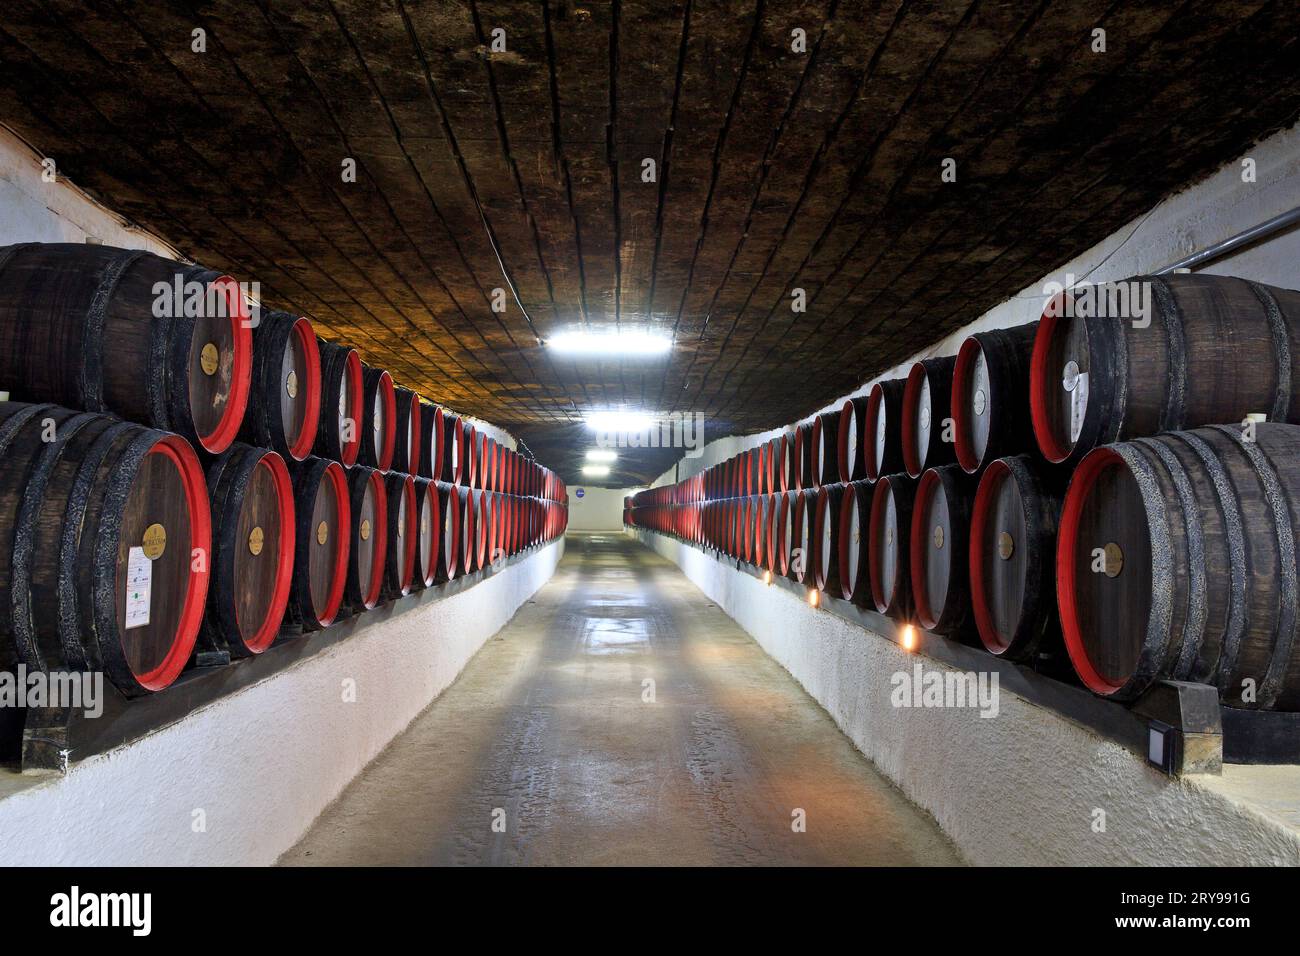 Le botti di vino conservate presso le antiche gallerie sotterranee di pietra calcarea dell'azienda vinicola Cricova a Cricova, Moldavia Foto Stock